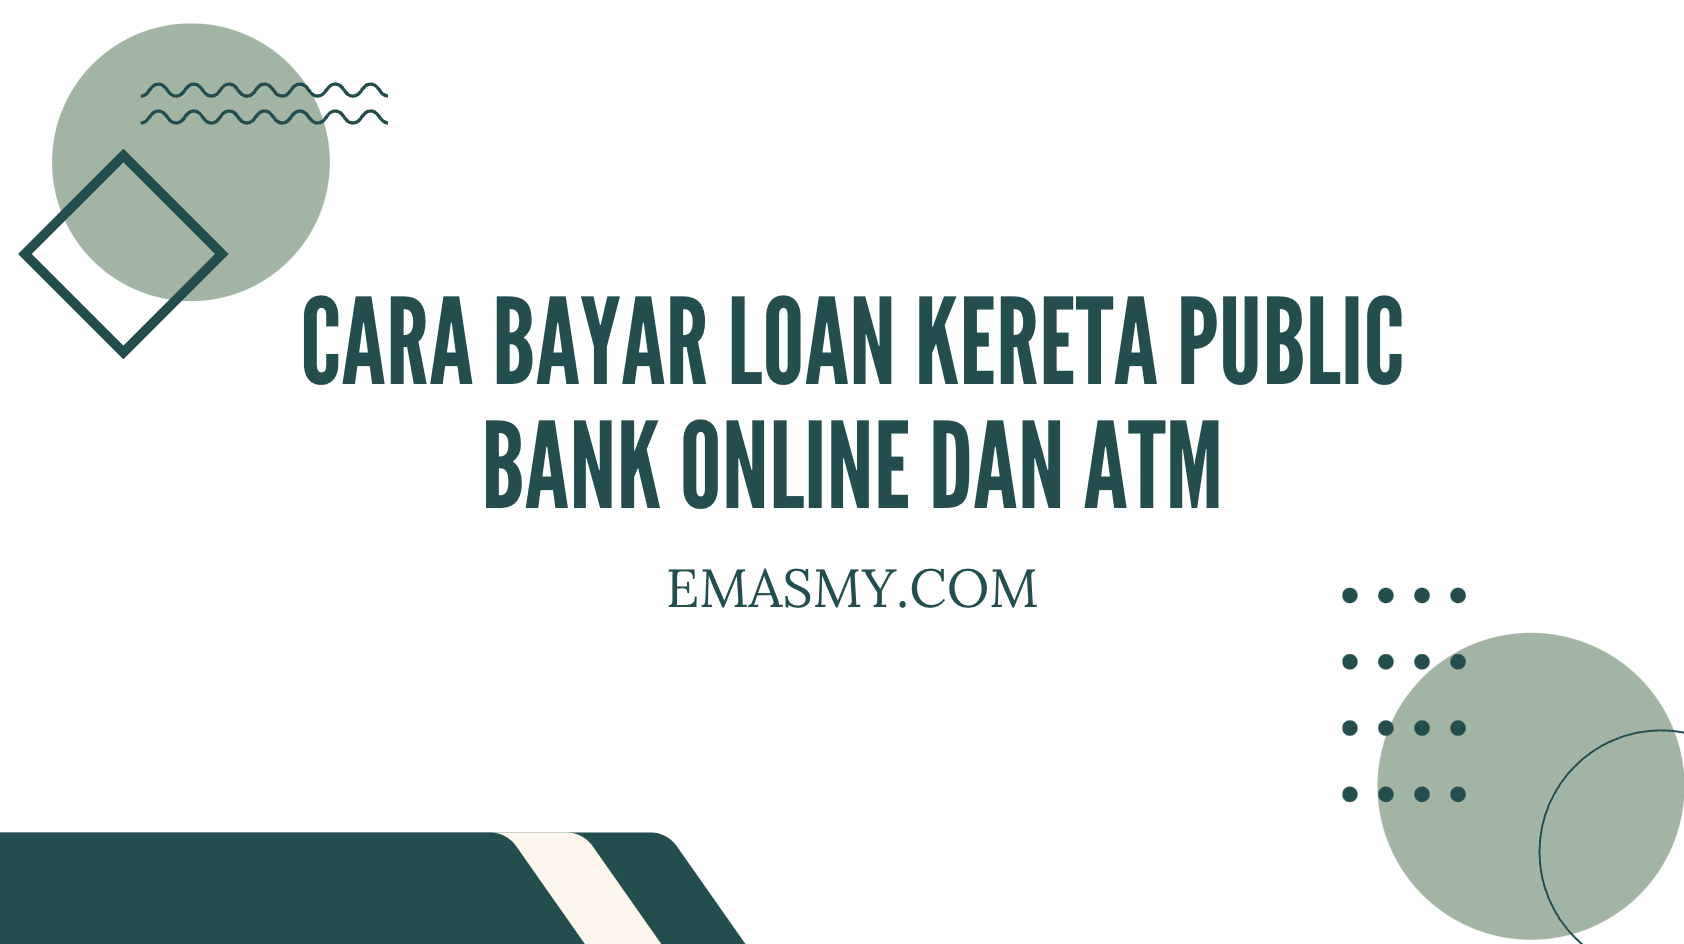 Cara Bayar Loan Kereta Public Bank Online dan ATM